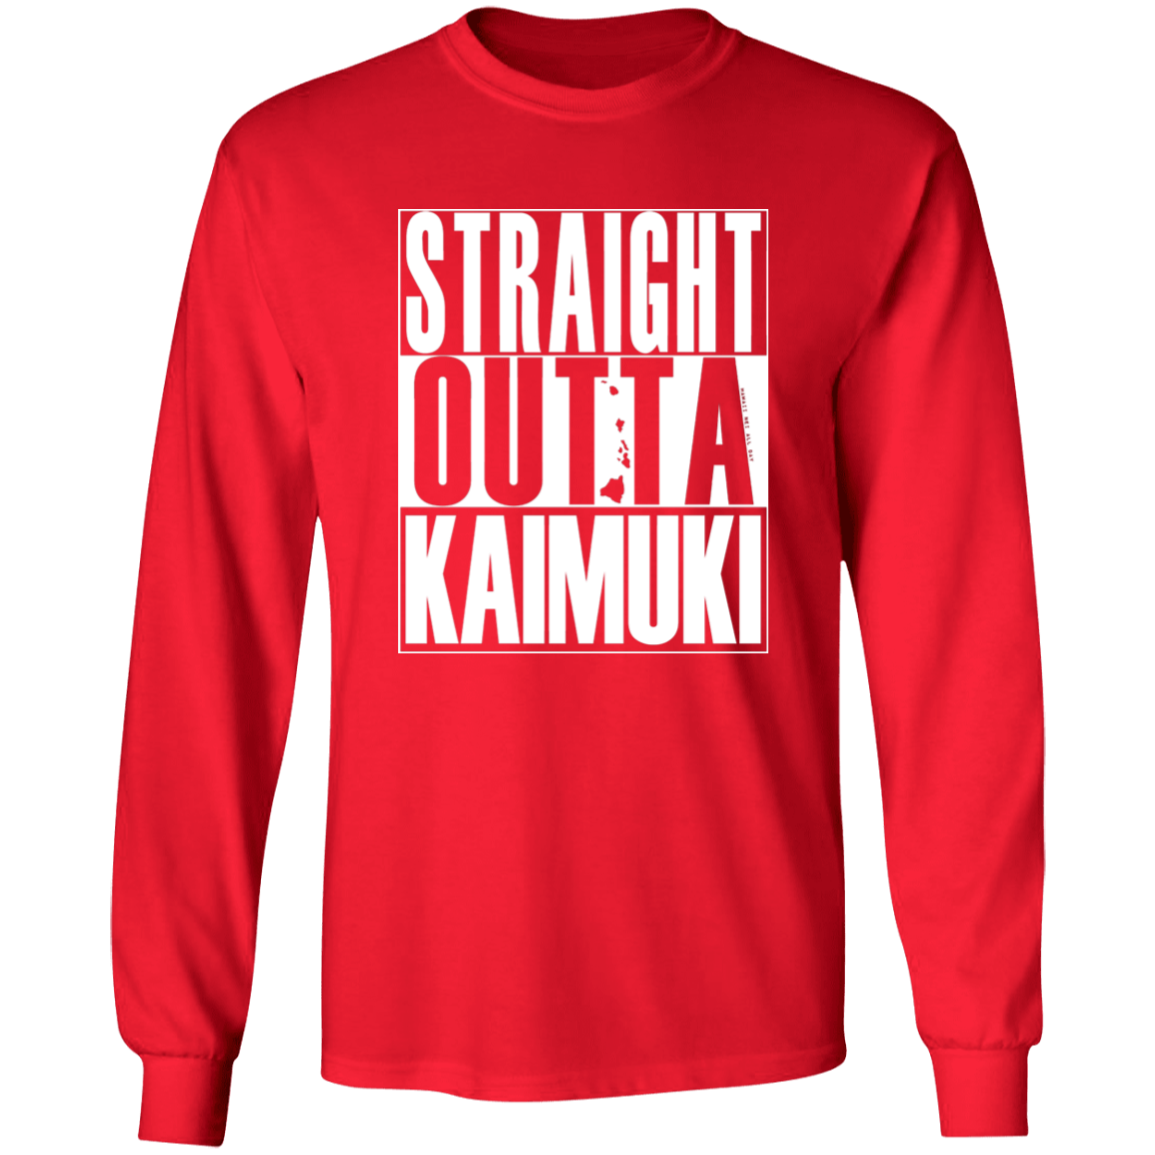 Straight Outta Kaimuki (white ink)  LS T-Shirt